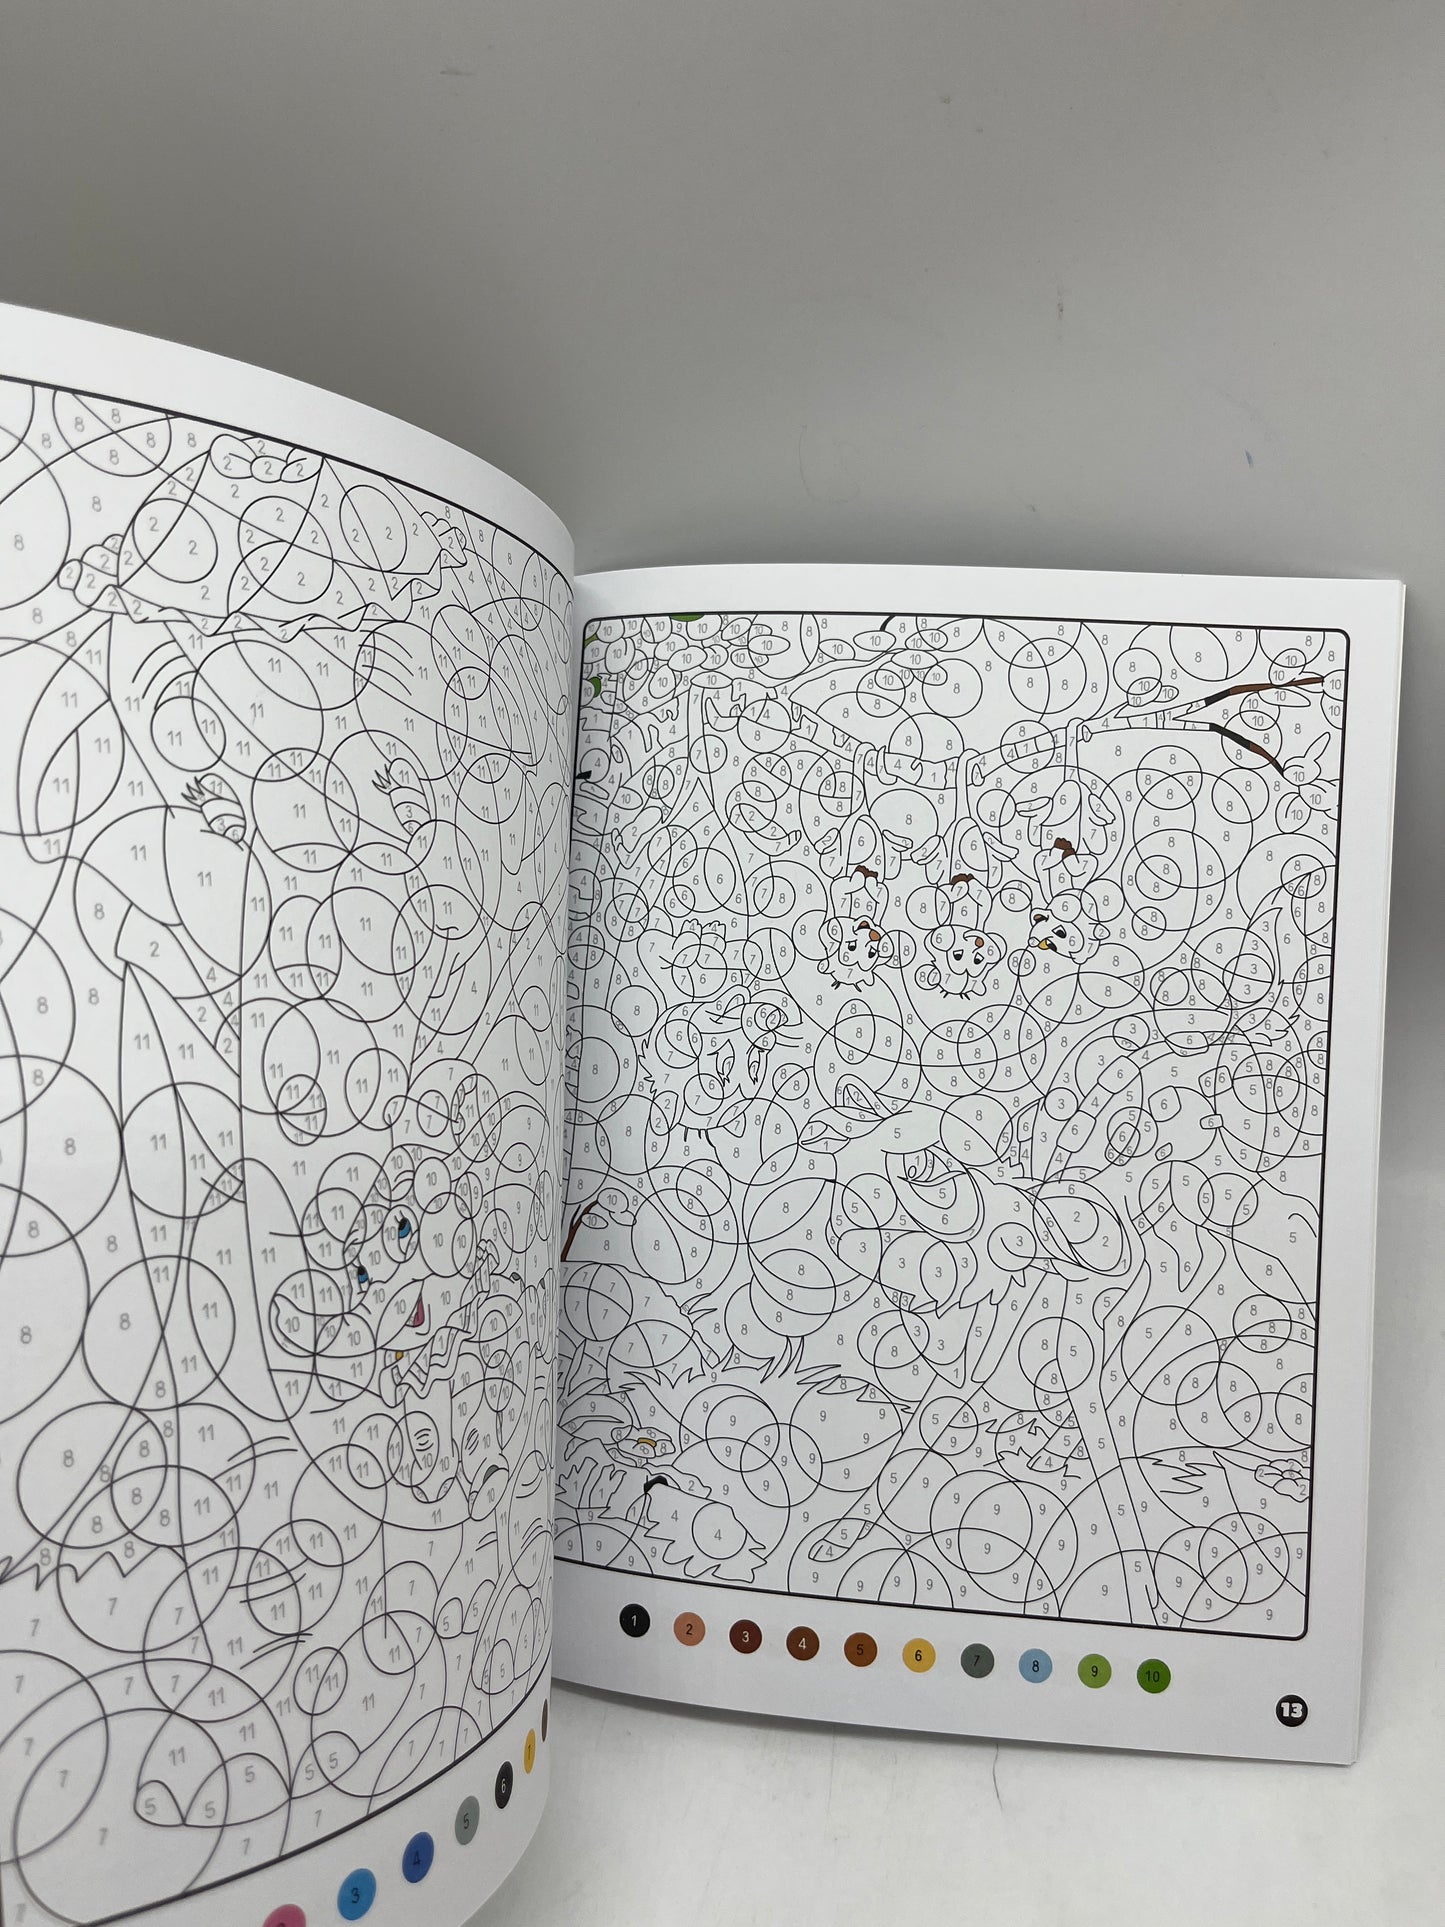 Livre d’activités les ateliers Coloriages magique  à colorier Disney tes héros préférés modèle cercle mystère Neuf